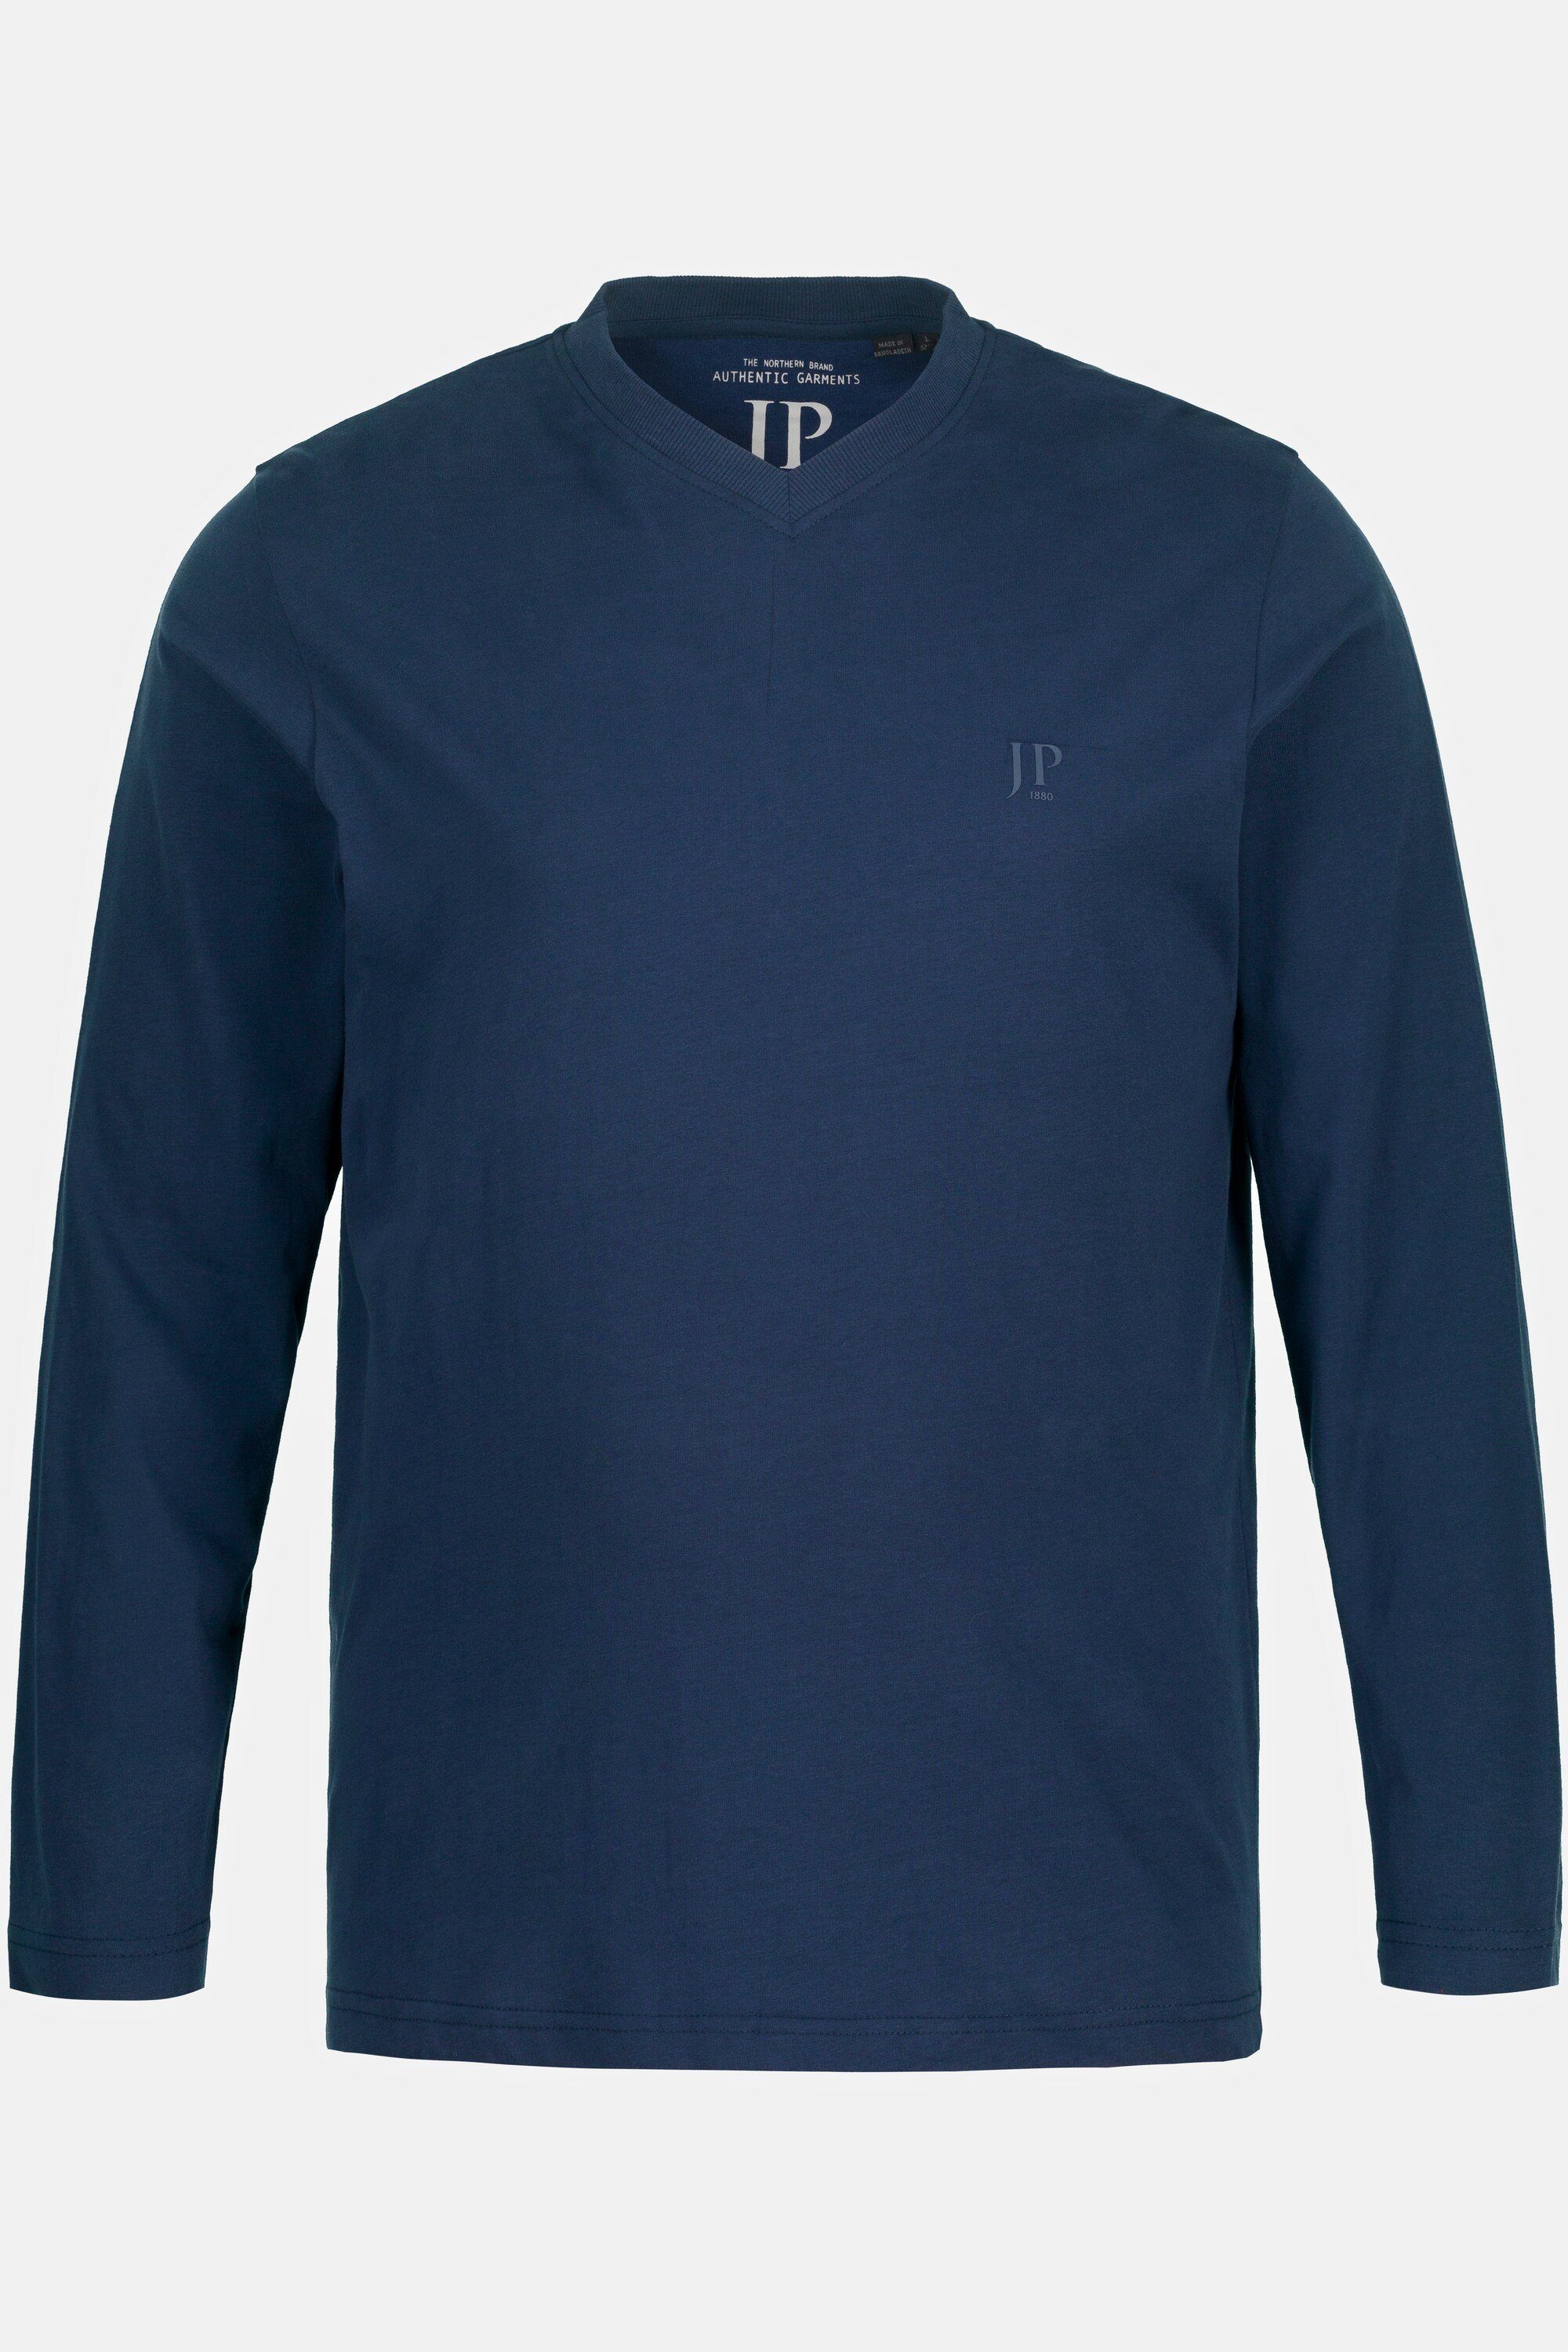 8 XL nachtblau Langarm T-Shirt bis T-Shirt V-Ausschnitt JP1880 mattes